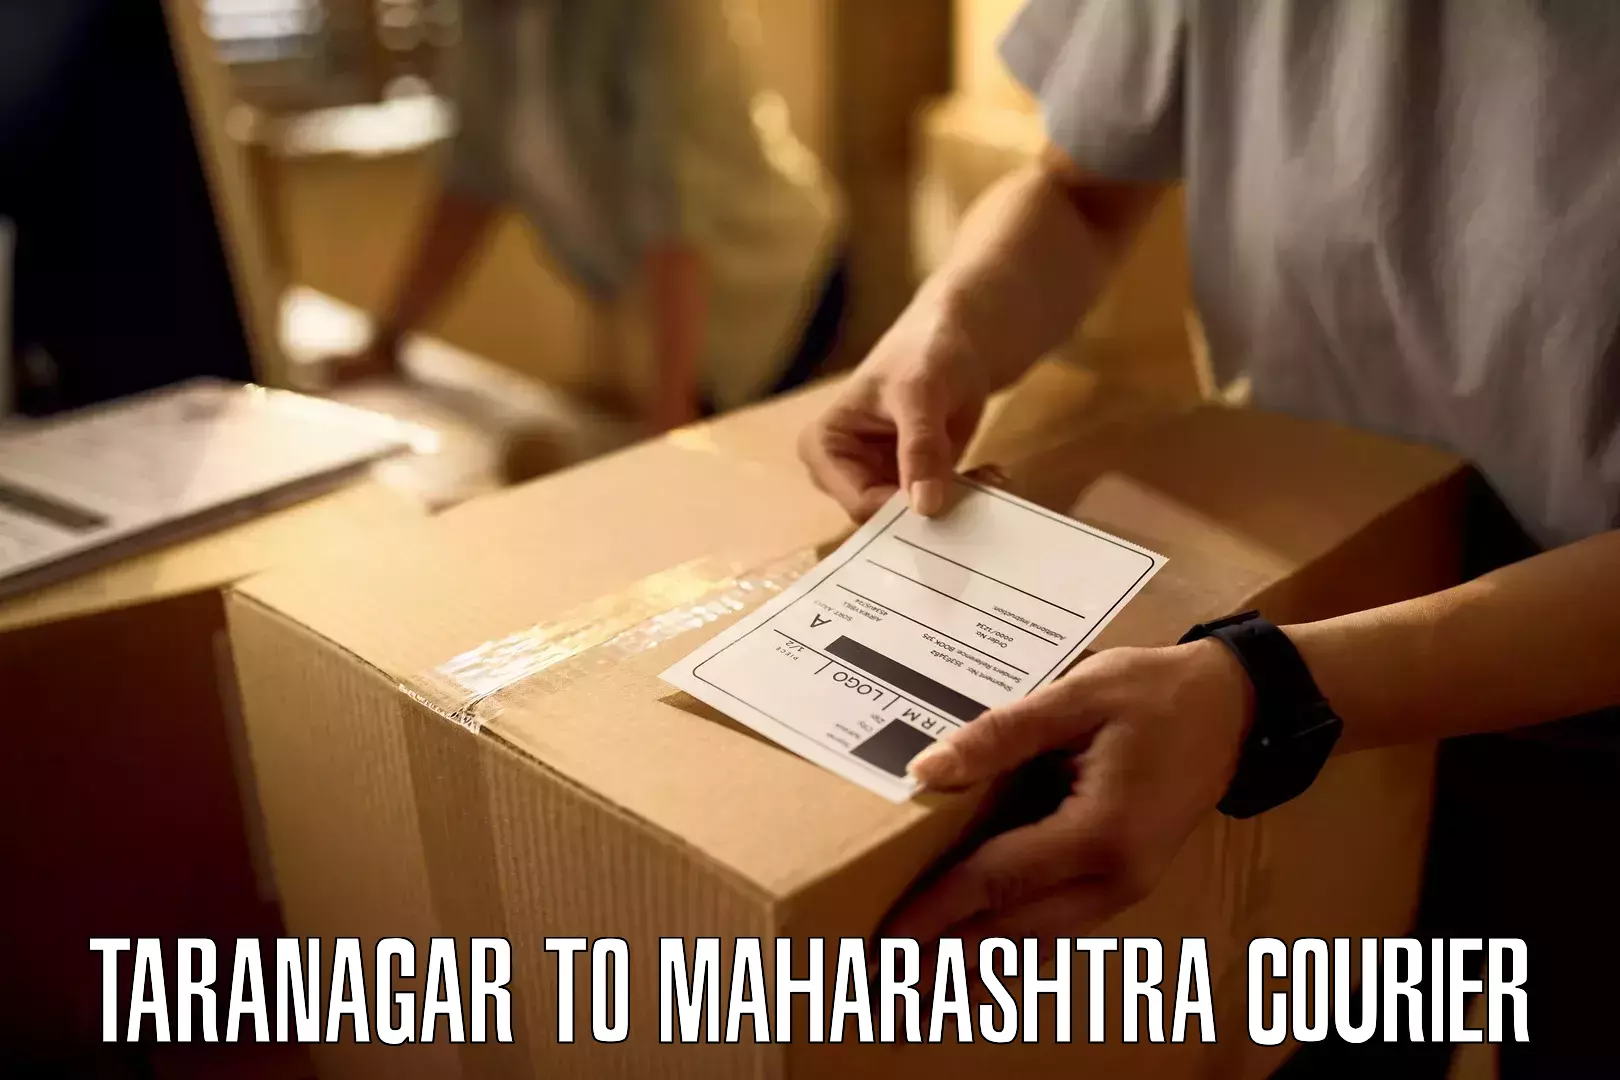 Courier service innovation Taranagar to Ahmednagar